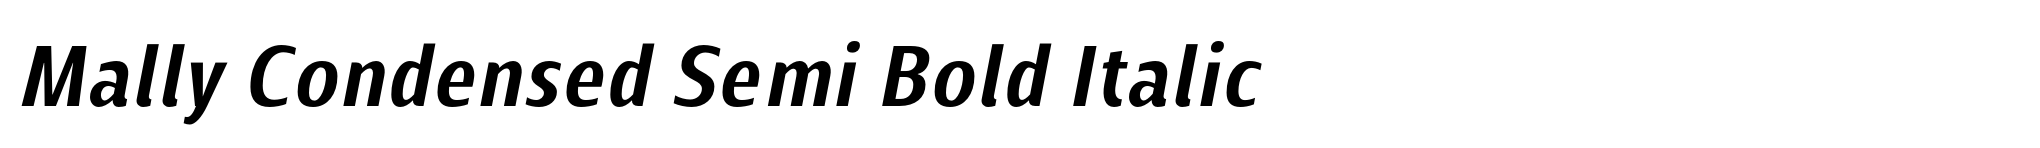 Mally Condensed Semi Bold Italic image